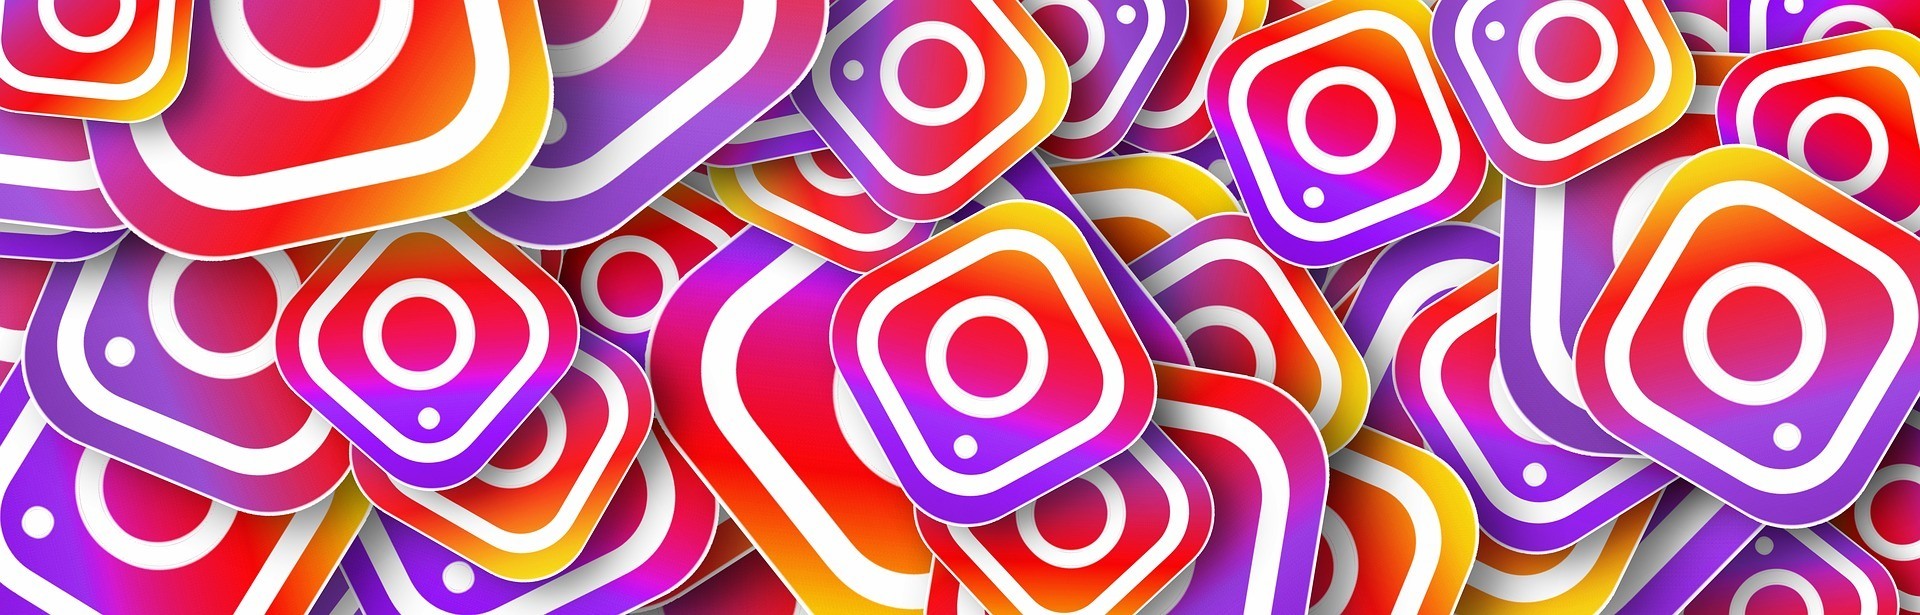 conectar tienda facebook con instagram